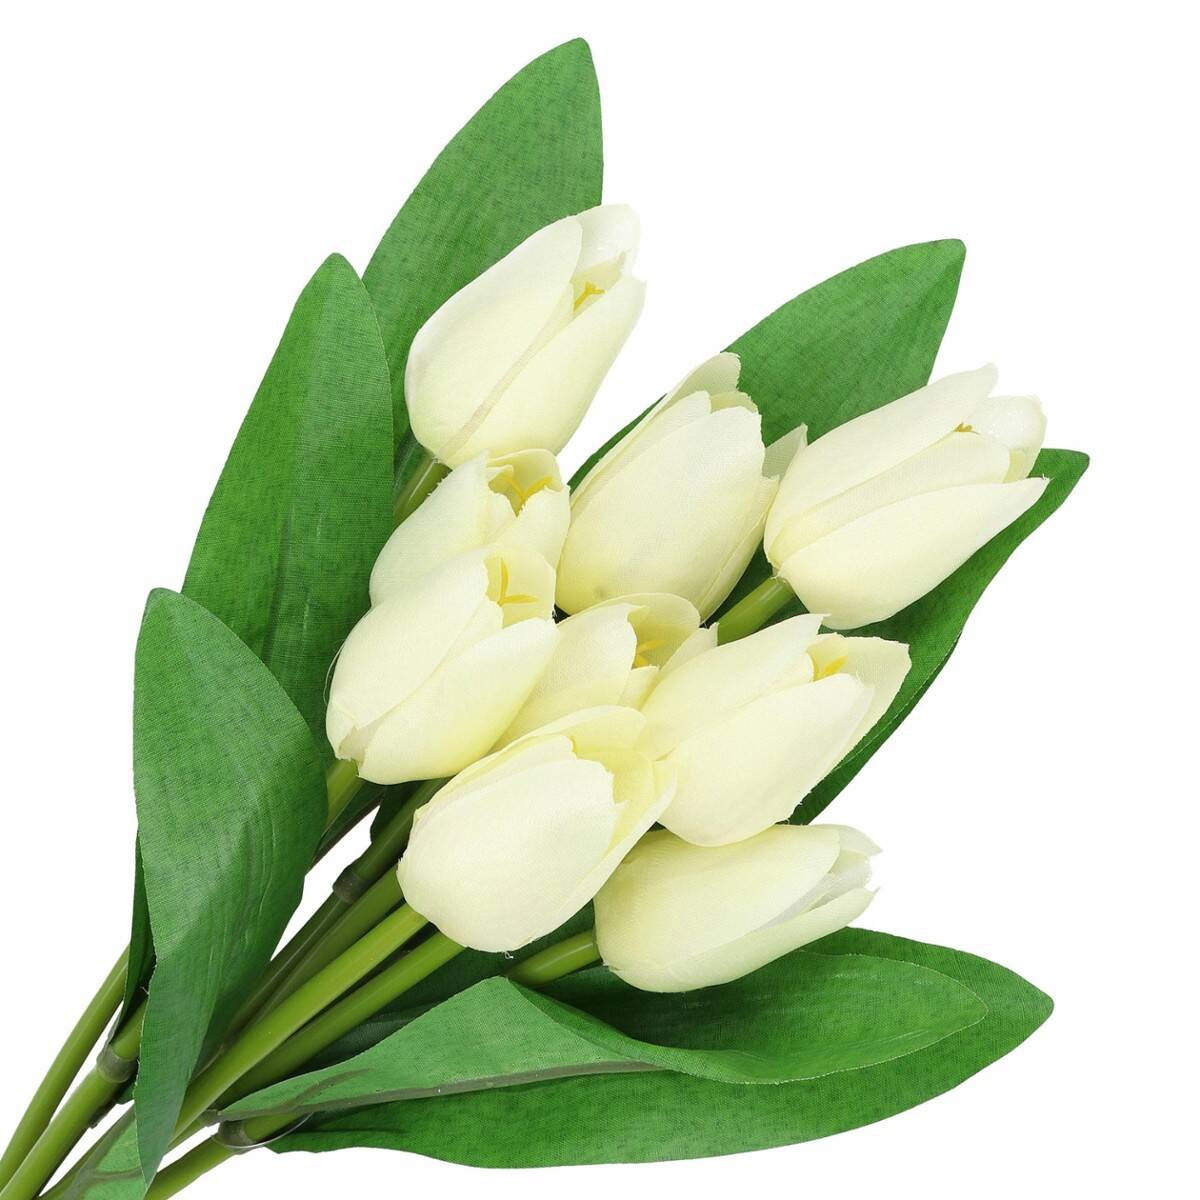 Bukiet tulipanów 9 szt. (Zdjęcie 1)